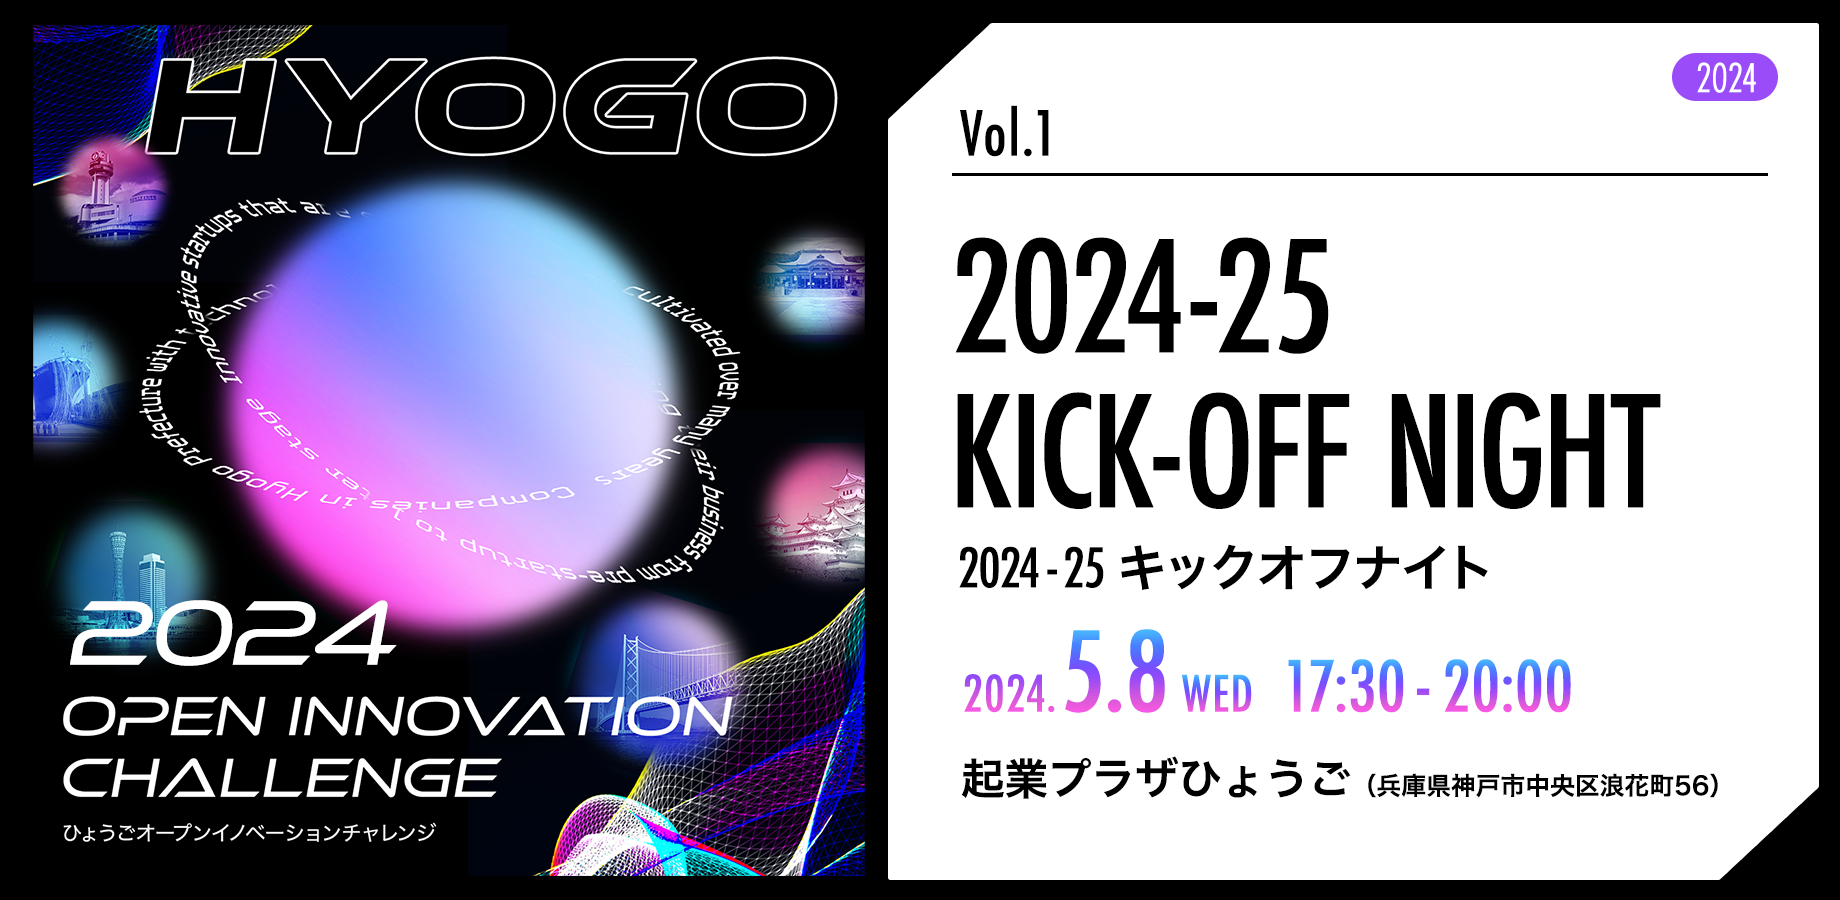 HYOGO_Event_2024_peatix_Vol.1